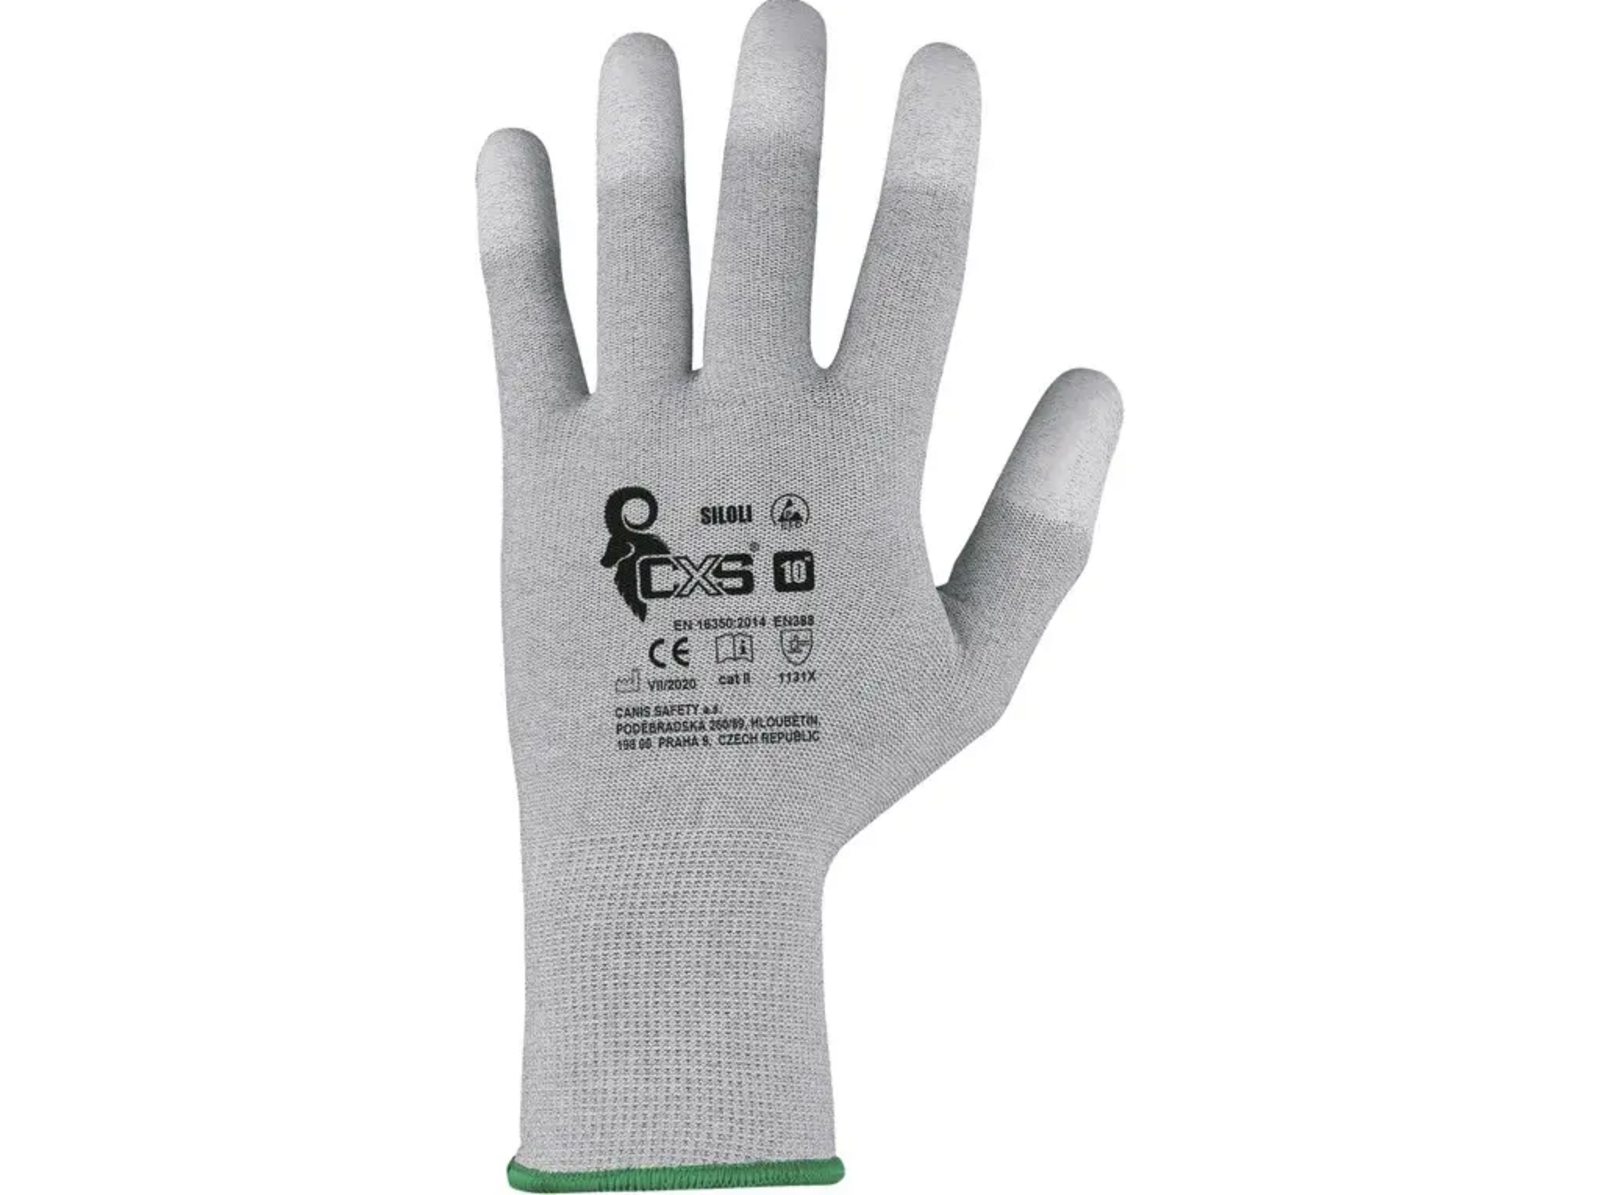 Povrstvené antistatické rukavice CXS Siloli - veľkosť: 10/XL, farba: sivá